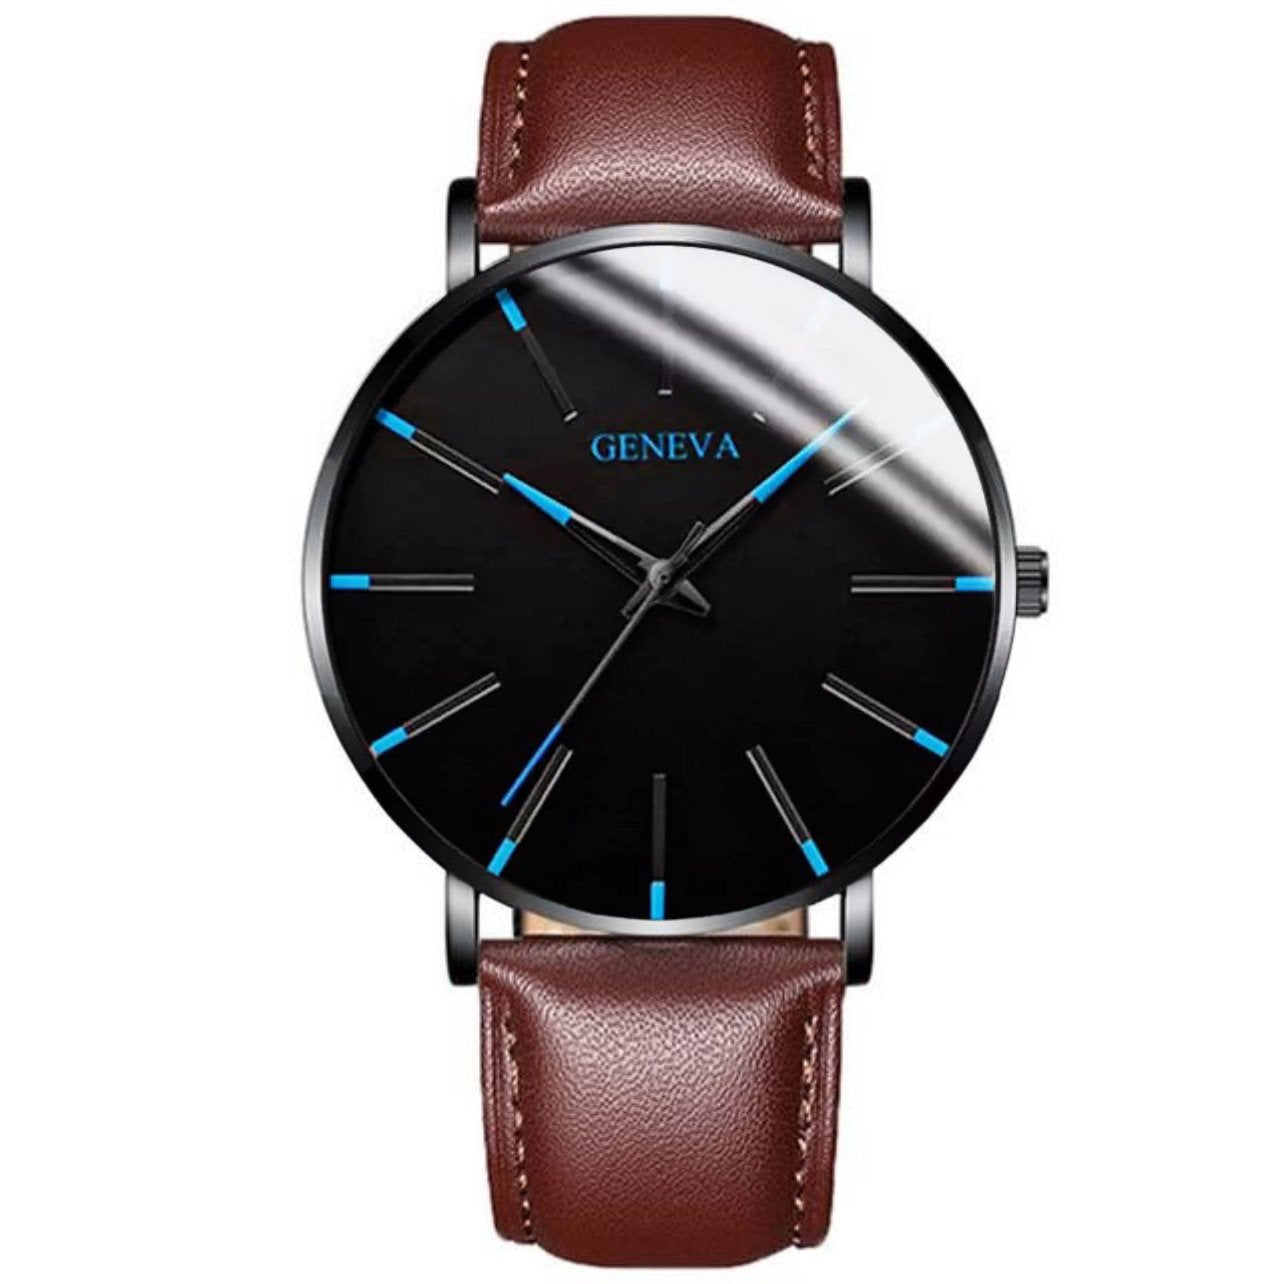 Loliva's - GENEVA® - Het coolste horloge voor mannen!